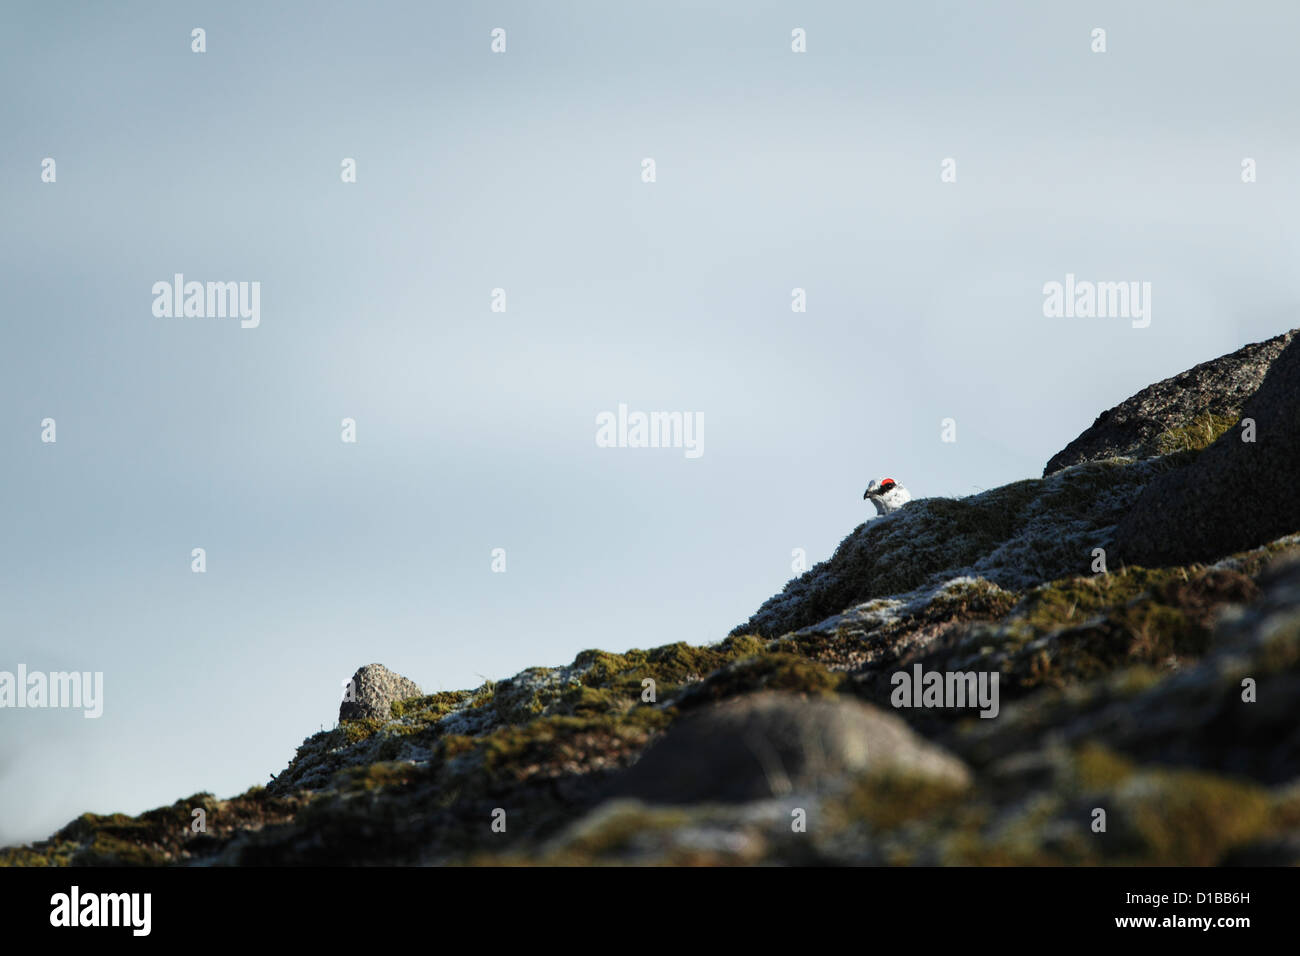 Le lagopède alpin (Lagopus mutus) mâle sur une colline couverte de neige partiellement masquée et à la recherche sur une arête rocheuse saupoudré de neige Banque D'Images